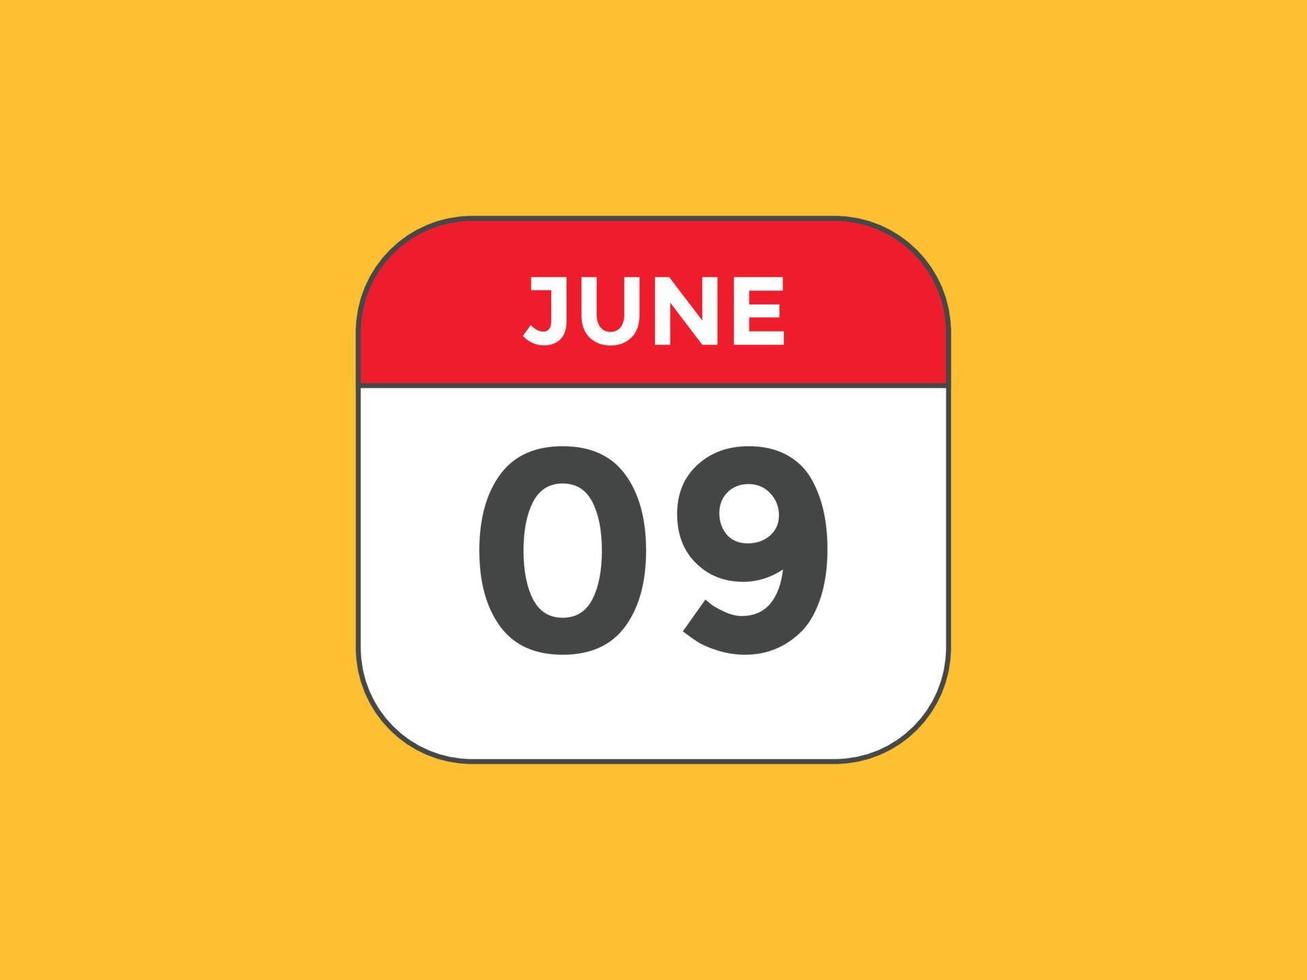 rappel du calendrier du 9 juin. Modèle d'icône de calendrier quotidien du 9 juin. modèle de conception d'icône calendrier 9 juin. illustration vectorielle vecteur